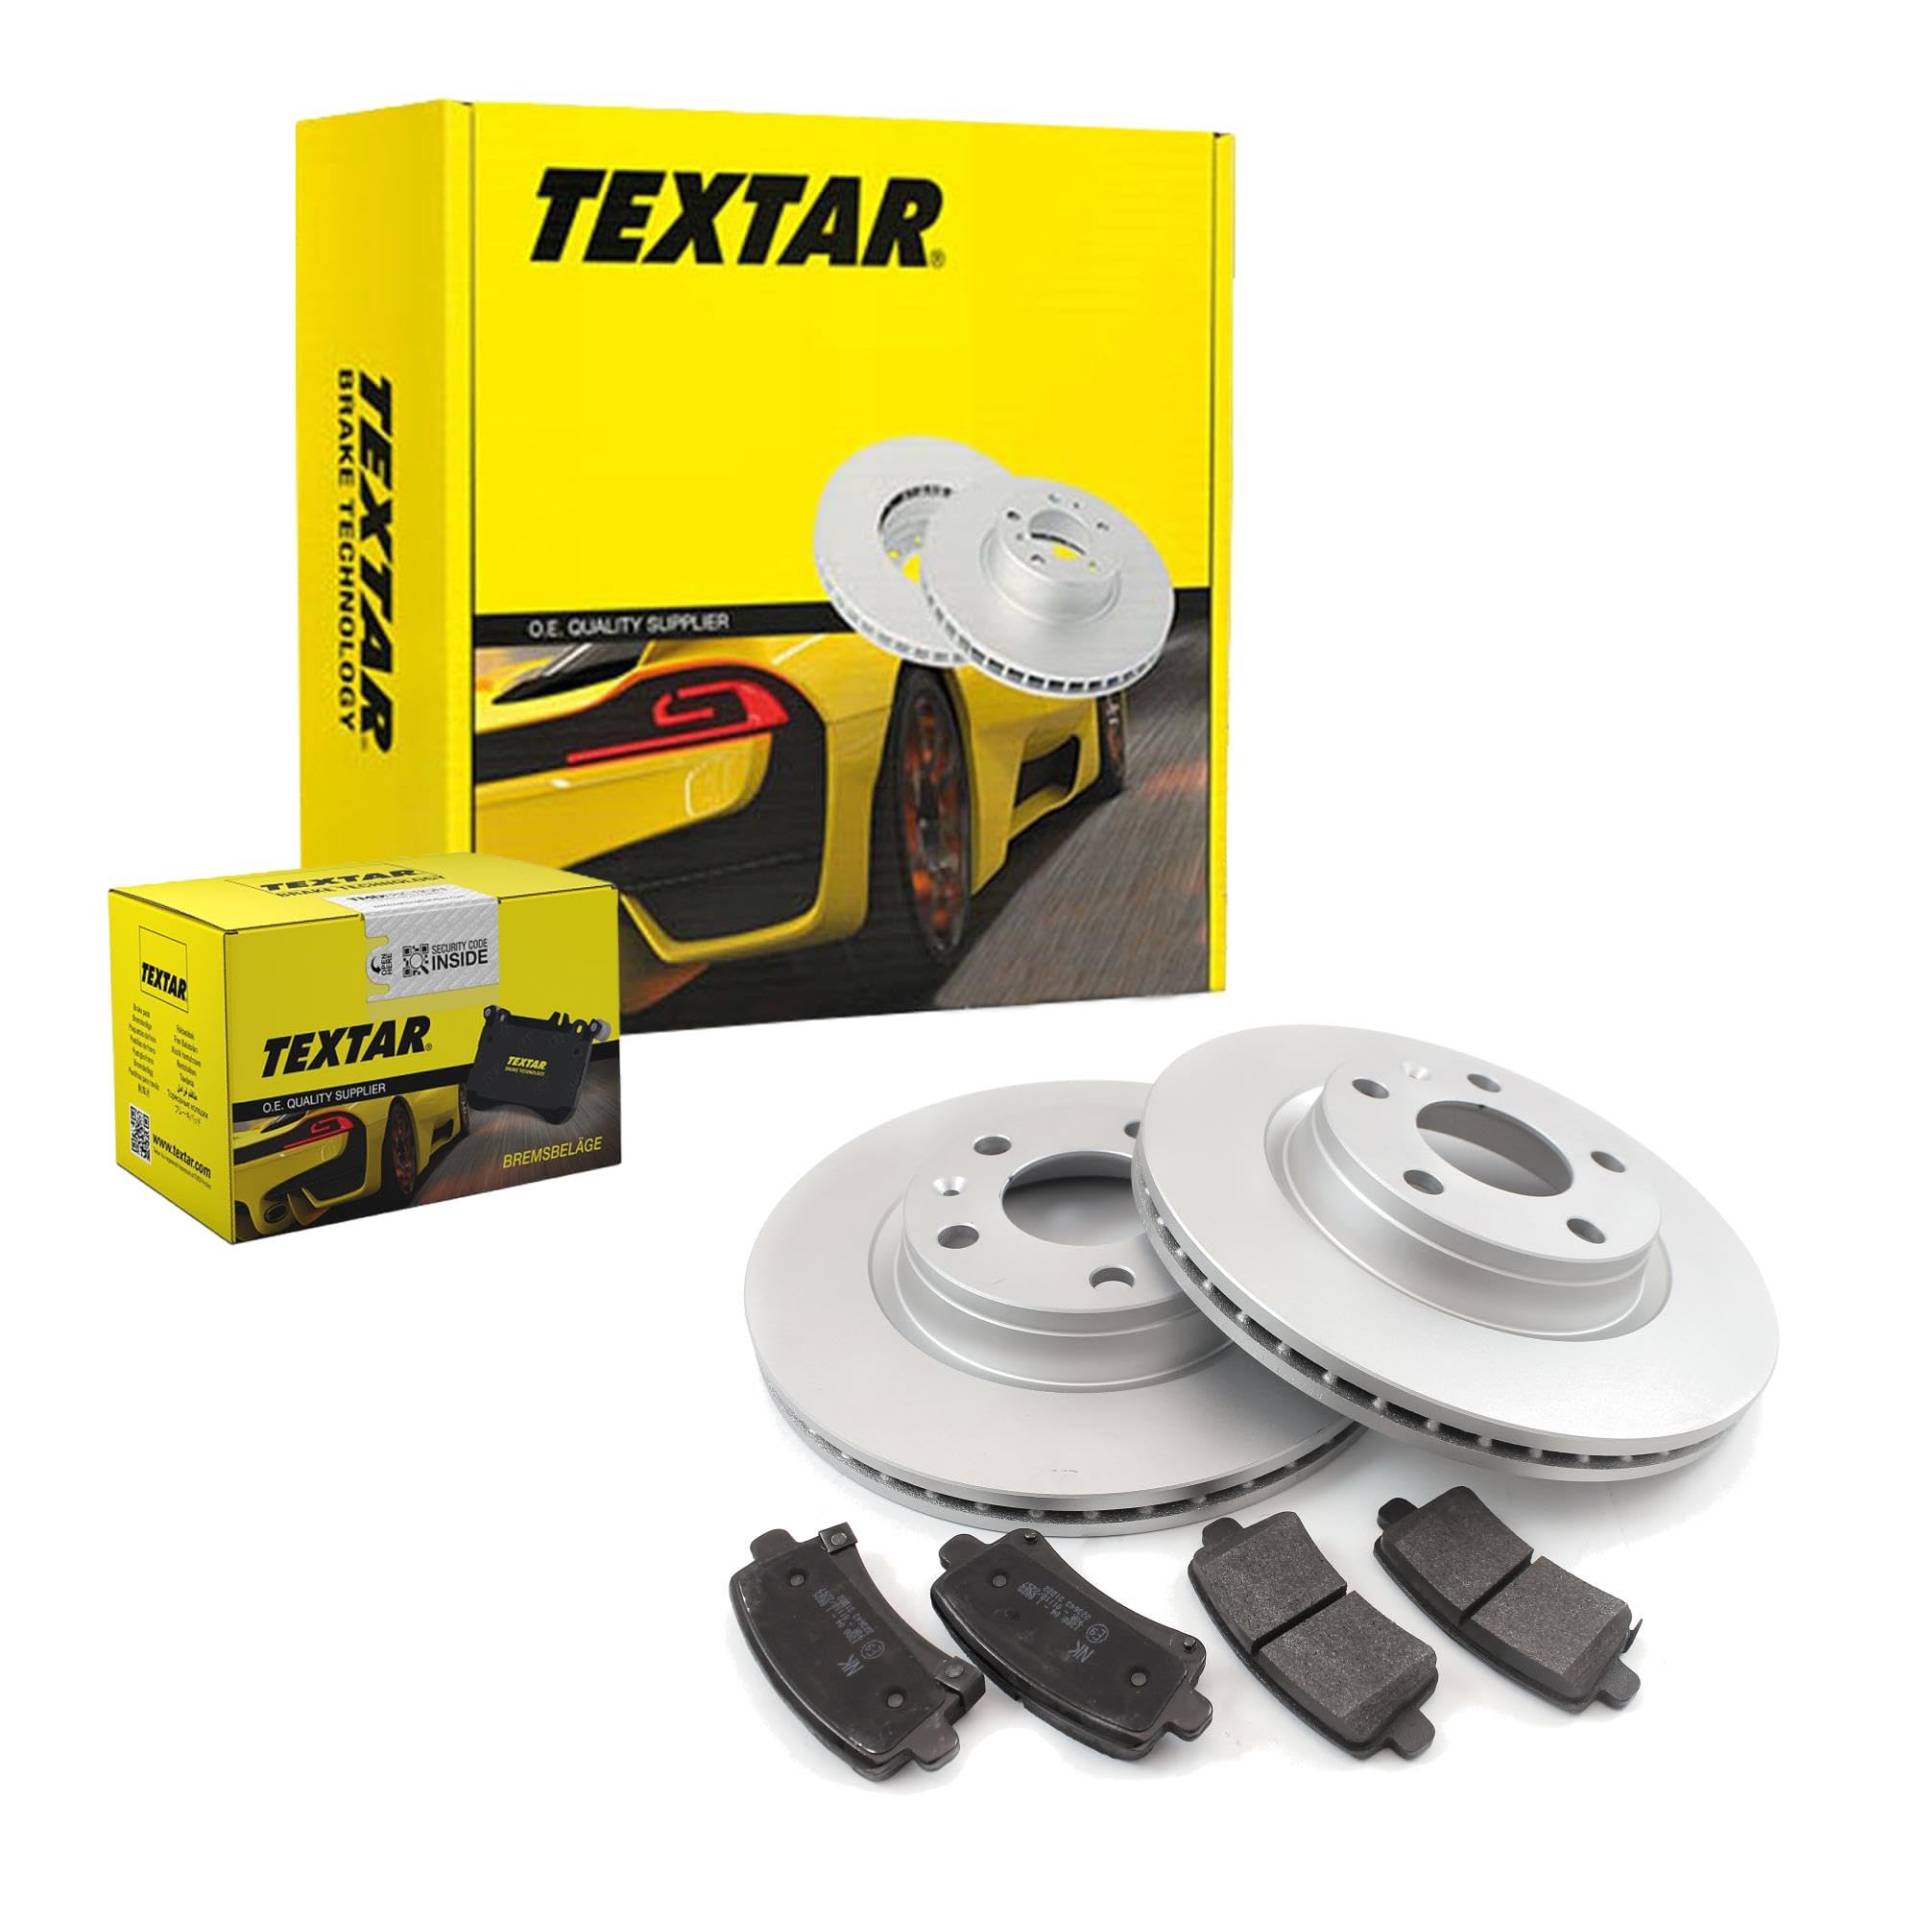 TEXTAR Bremsen Set Bremsscheiben Scheibenbremsen Ø293 belüftet beschichtet vorne + Bremsbeläge Bremsklötze für CR-V III von Generic